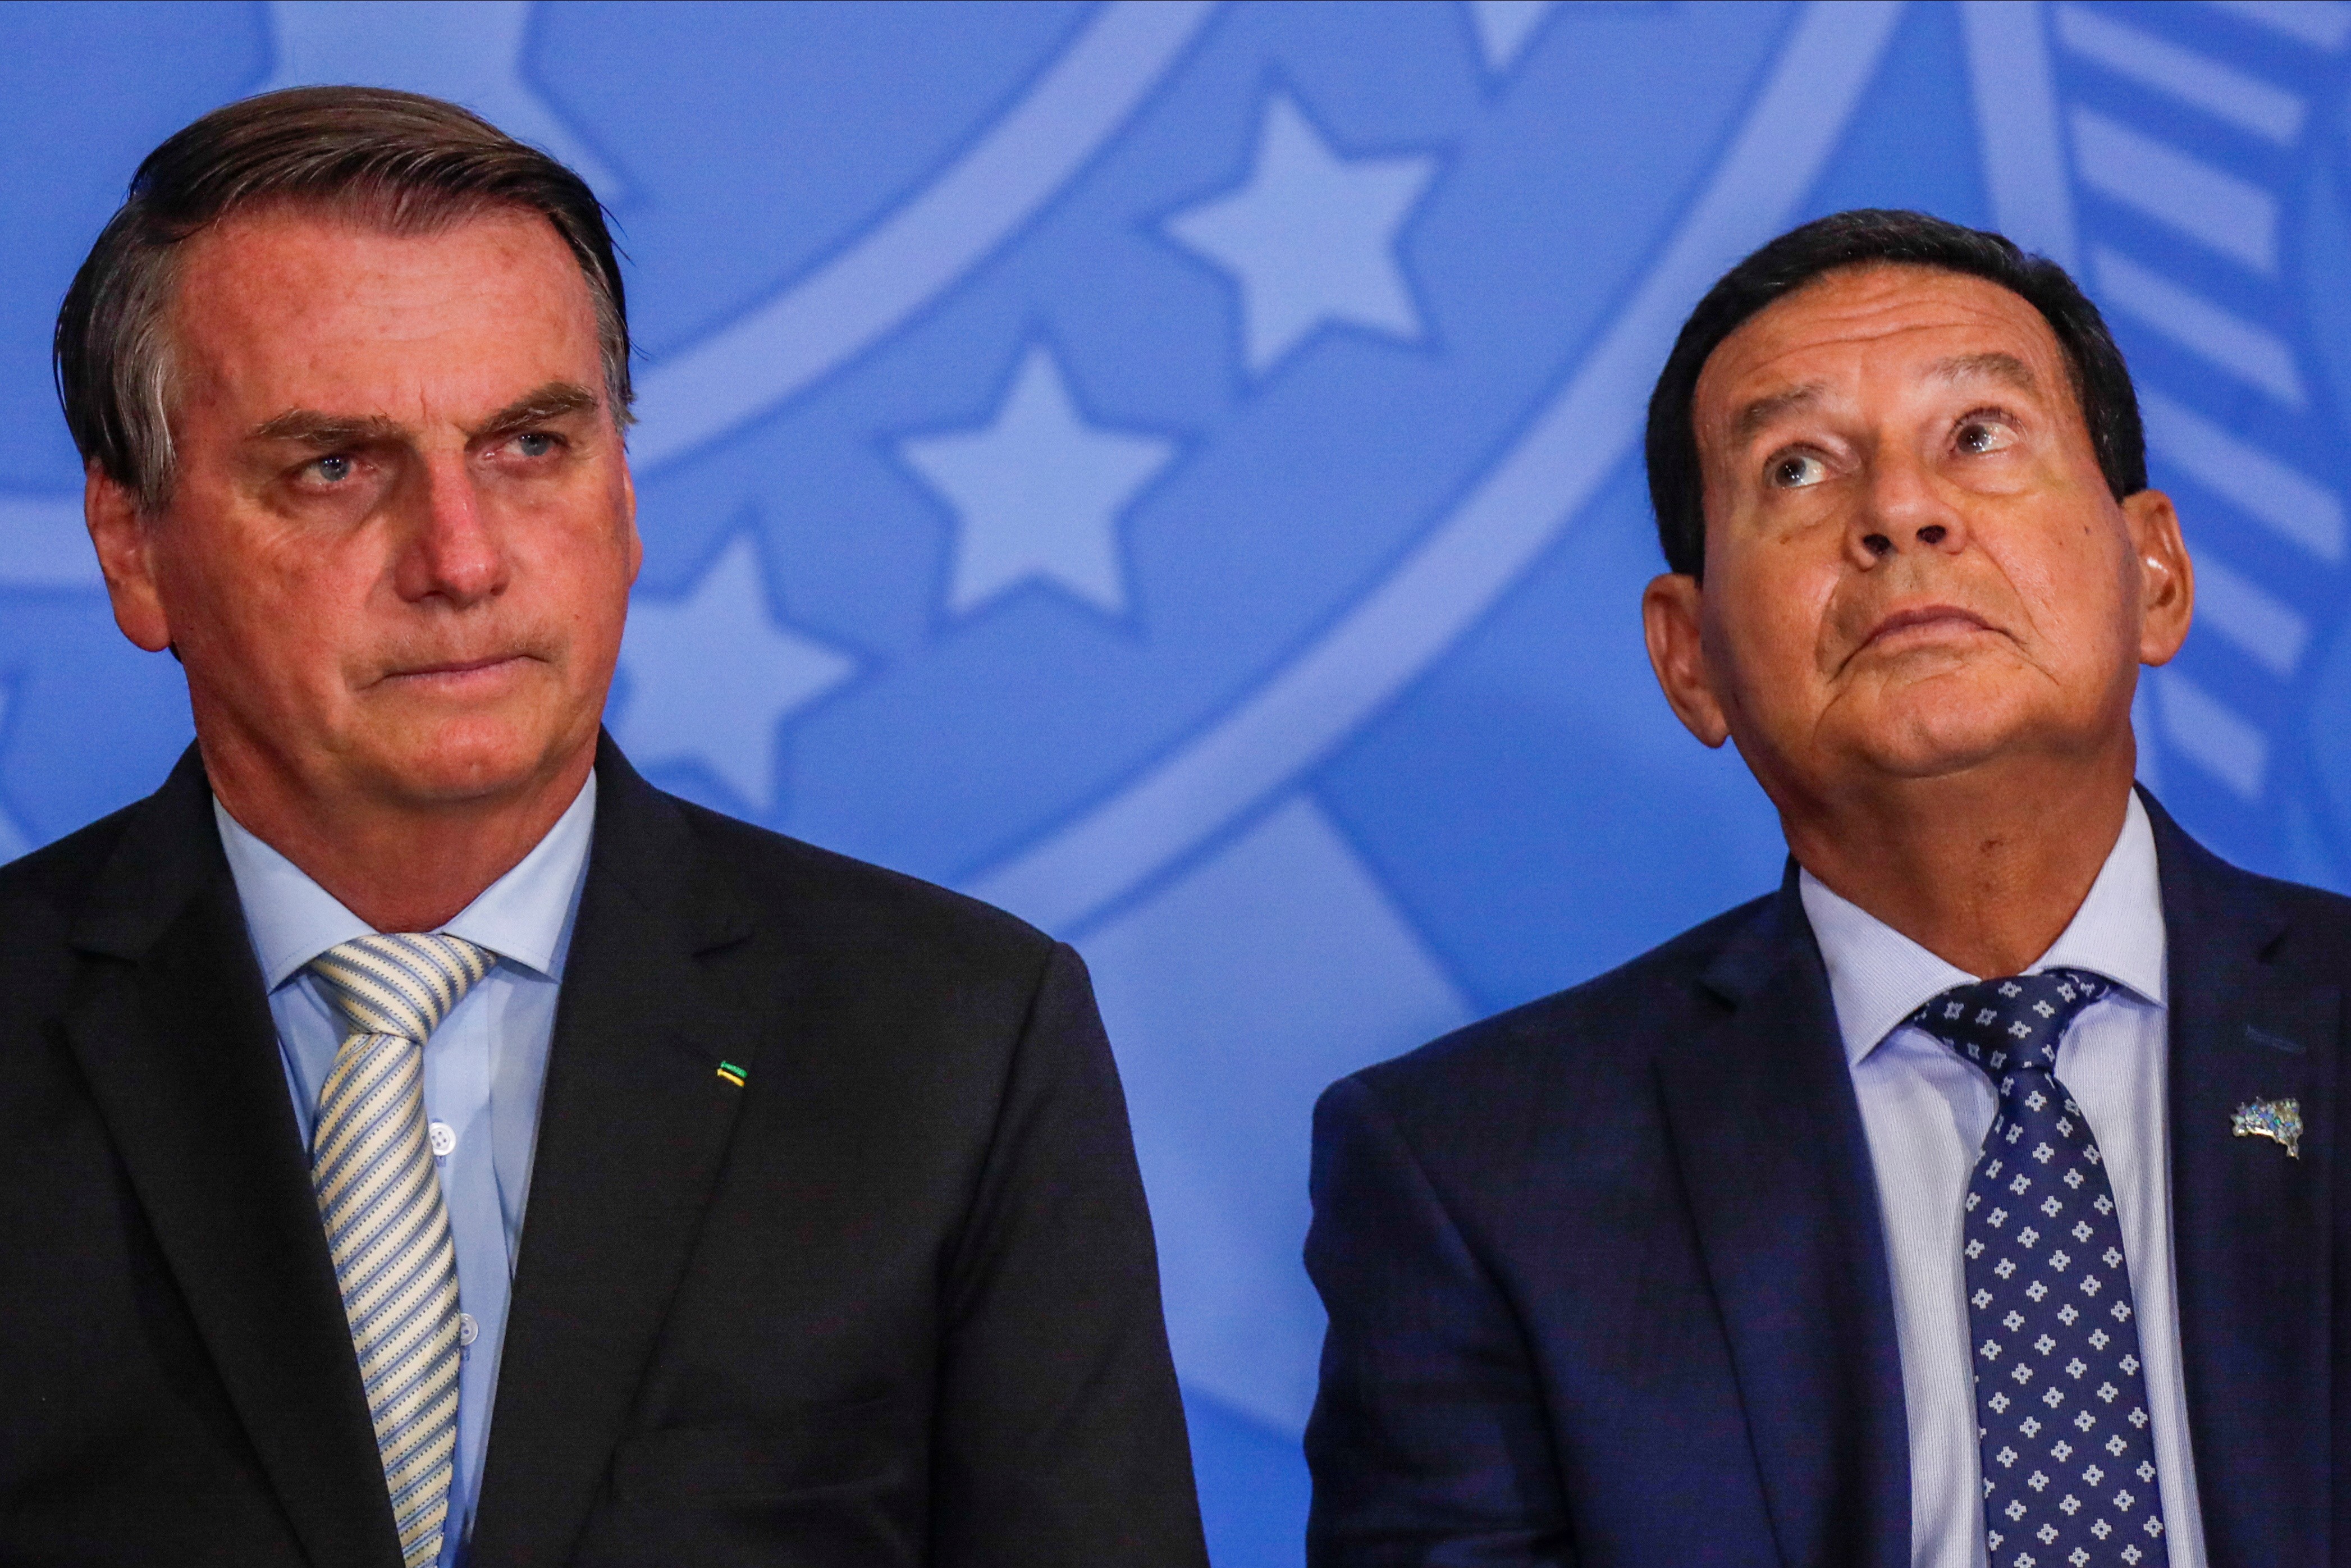 Presidente Jair Bolsonaro não comparecerá à COP26 (Foto: REUTERS/Ueslei Marcelino)